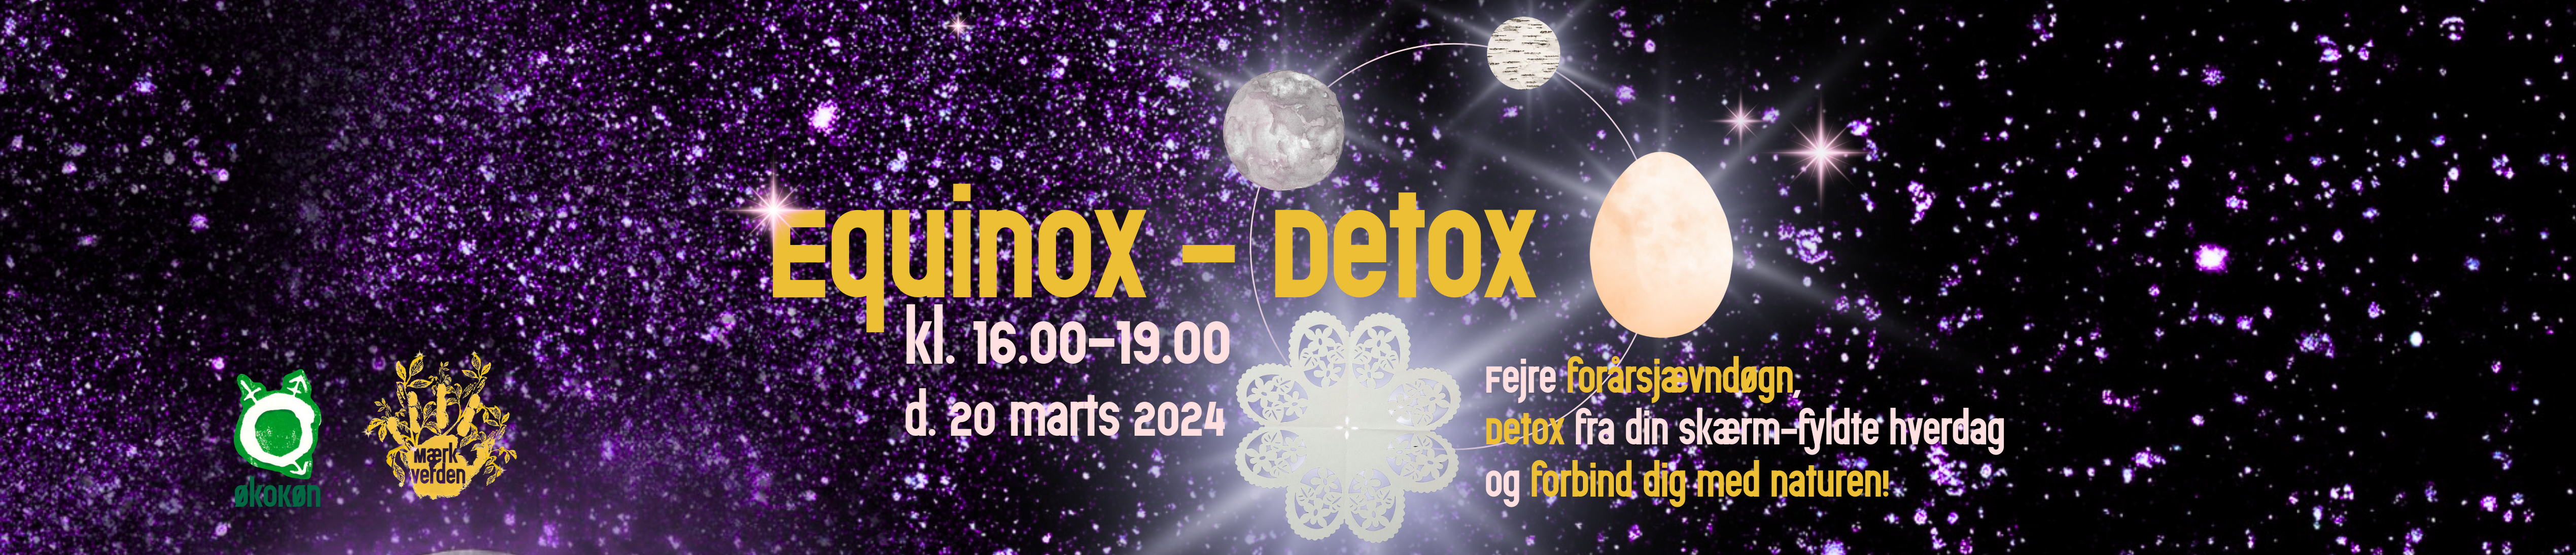 Equinox - Detox